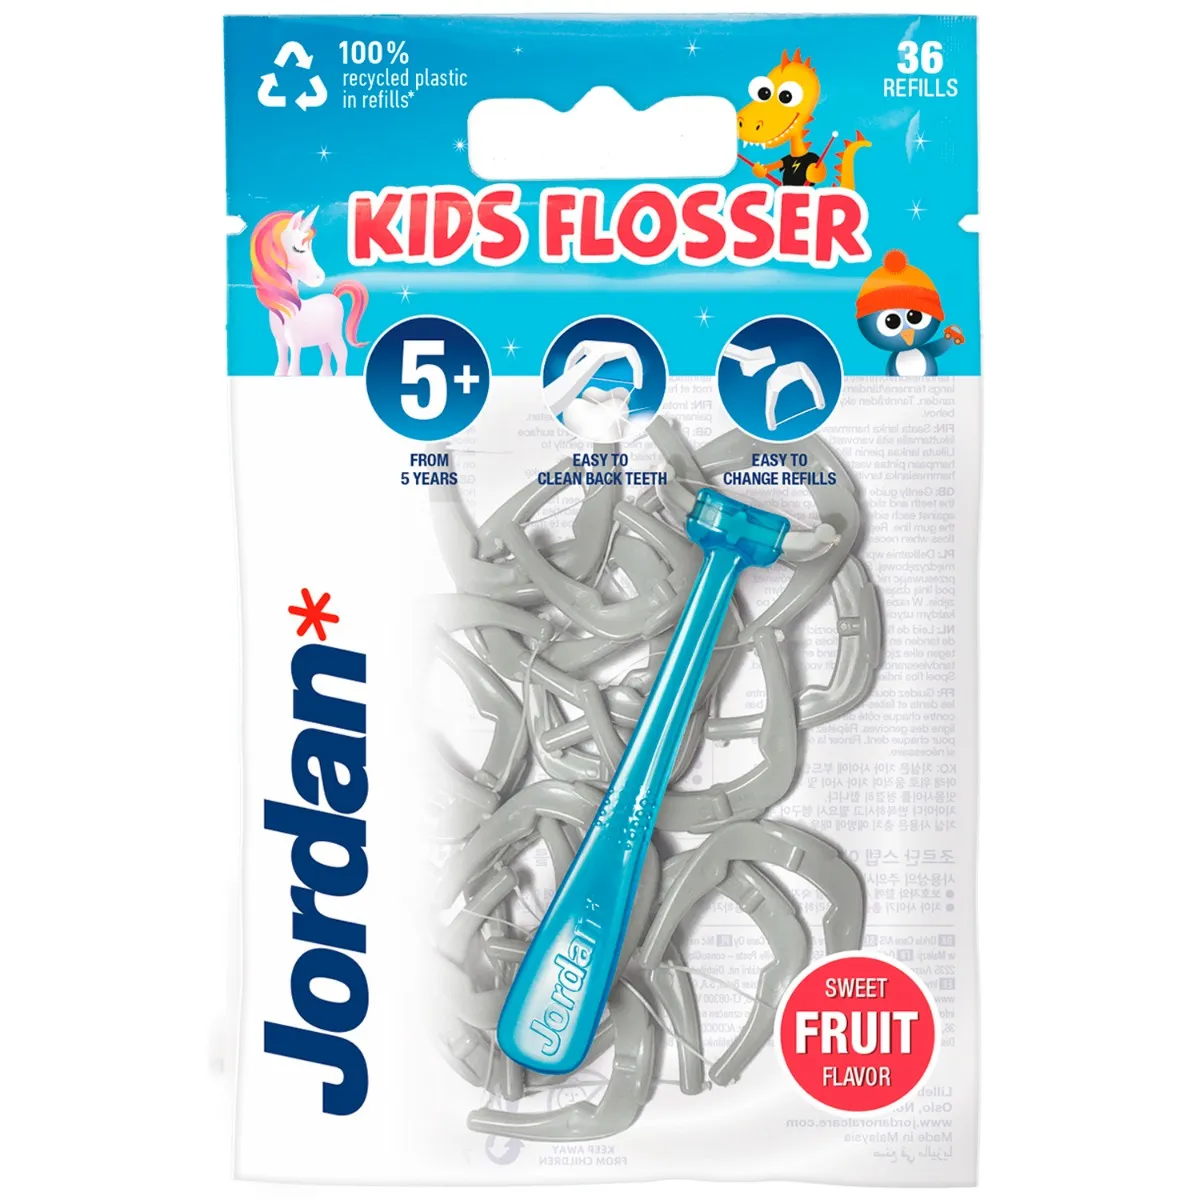 Jordan Kids Flosser przyrząd do nitkowania zębów dla dzieci z wymiennymi główkami, 36 szt. 